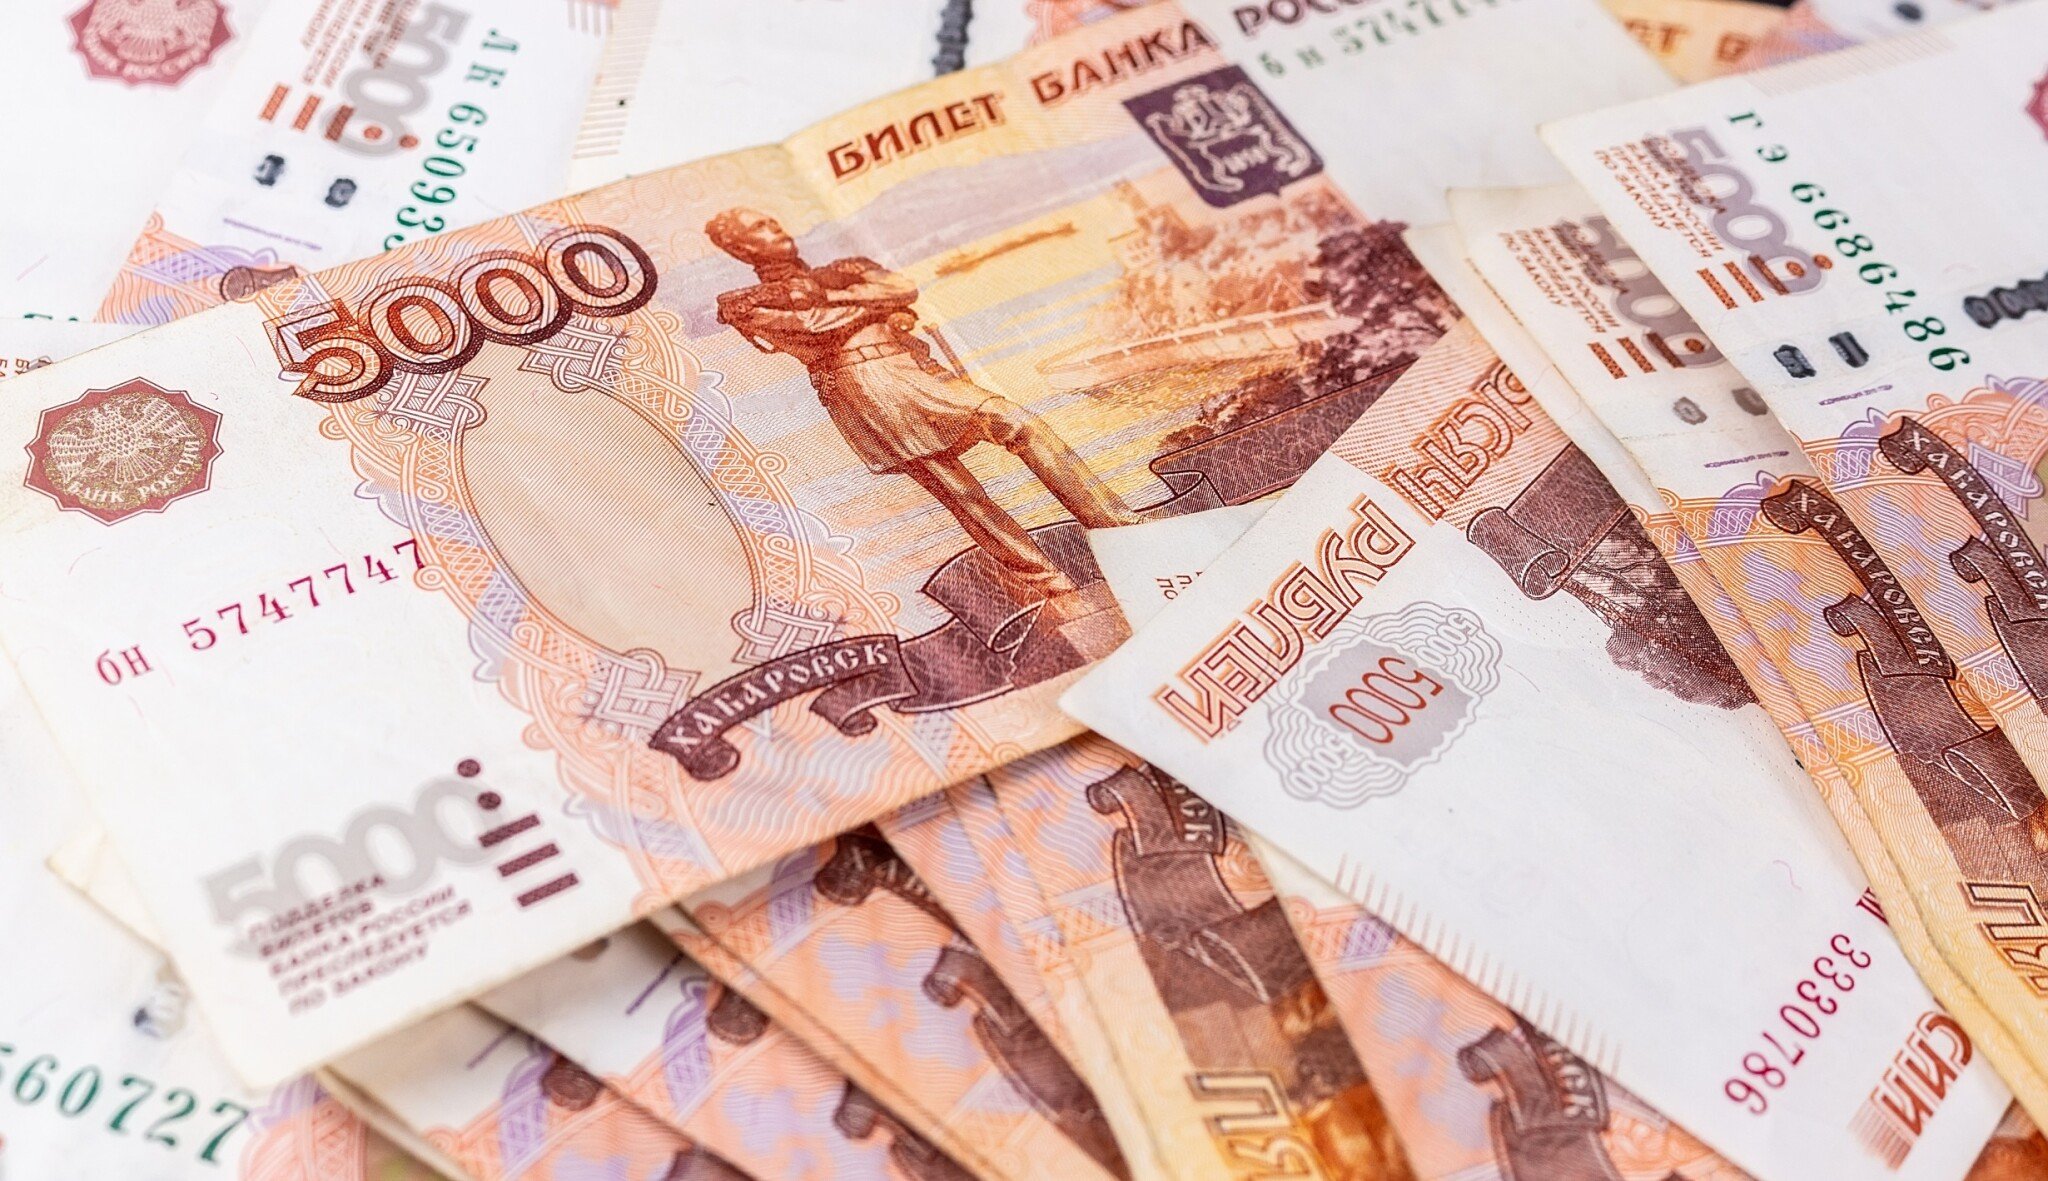 Rusko zaplatilo úroky z dluhopisů. Vyhnulo se tak platební neschopnosti